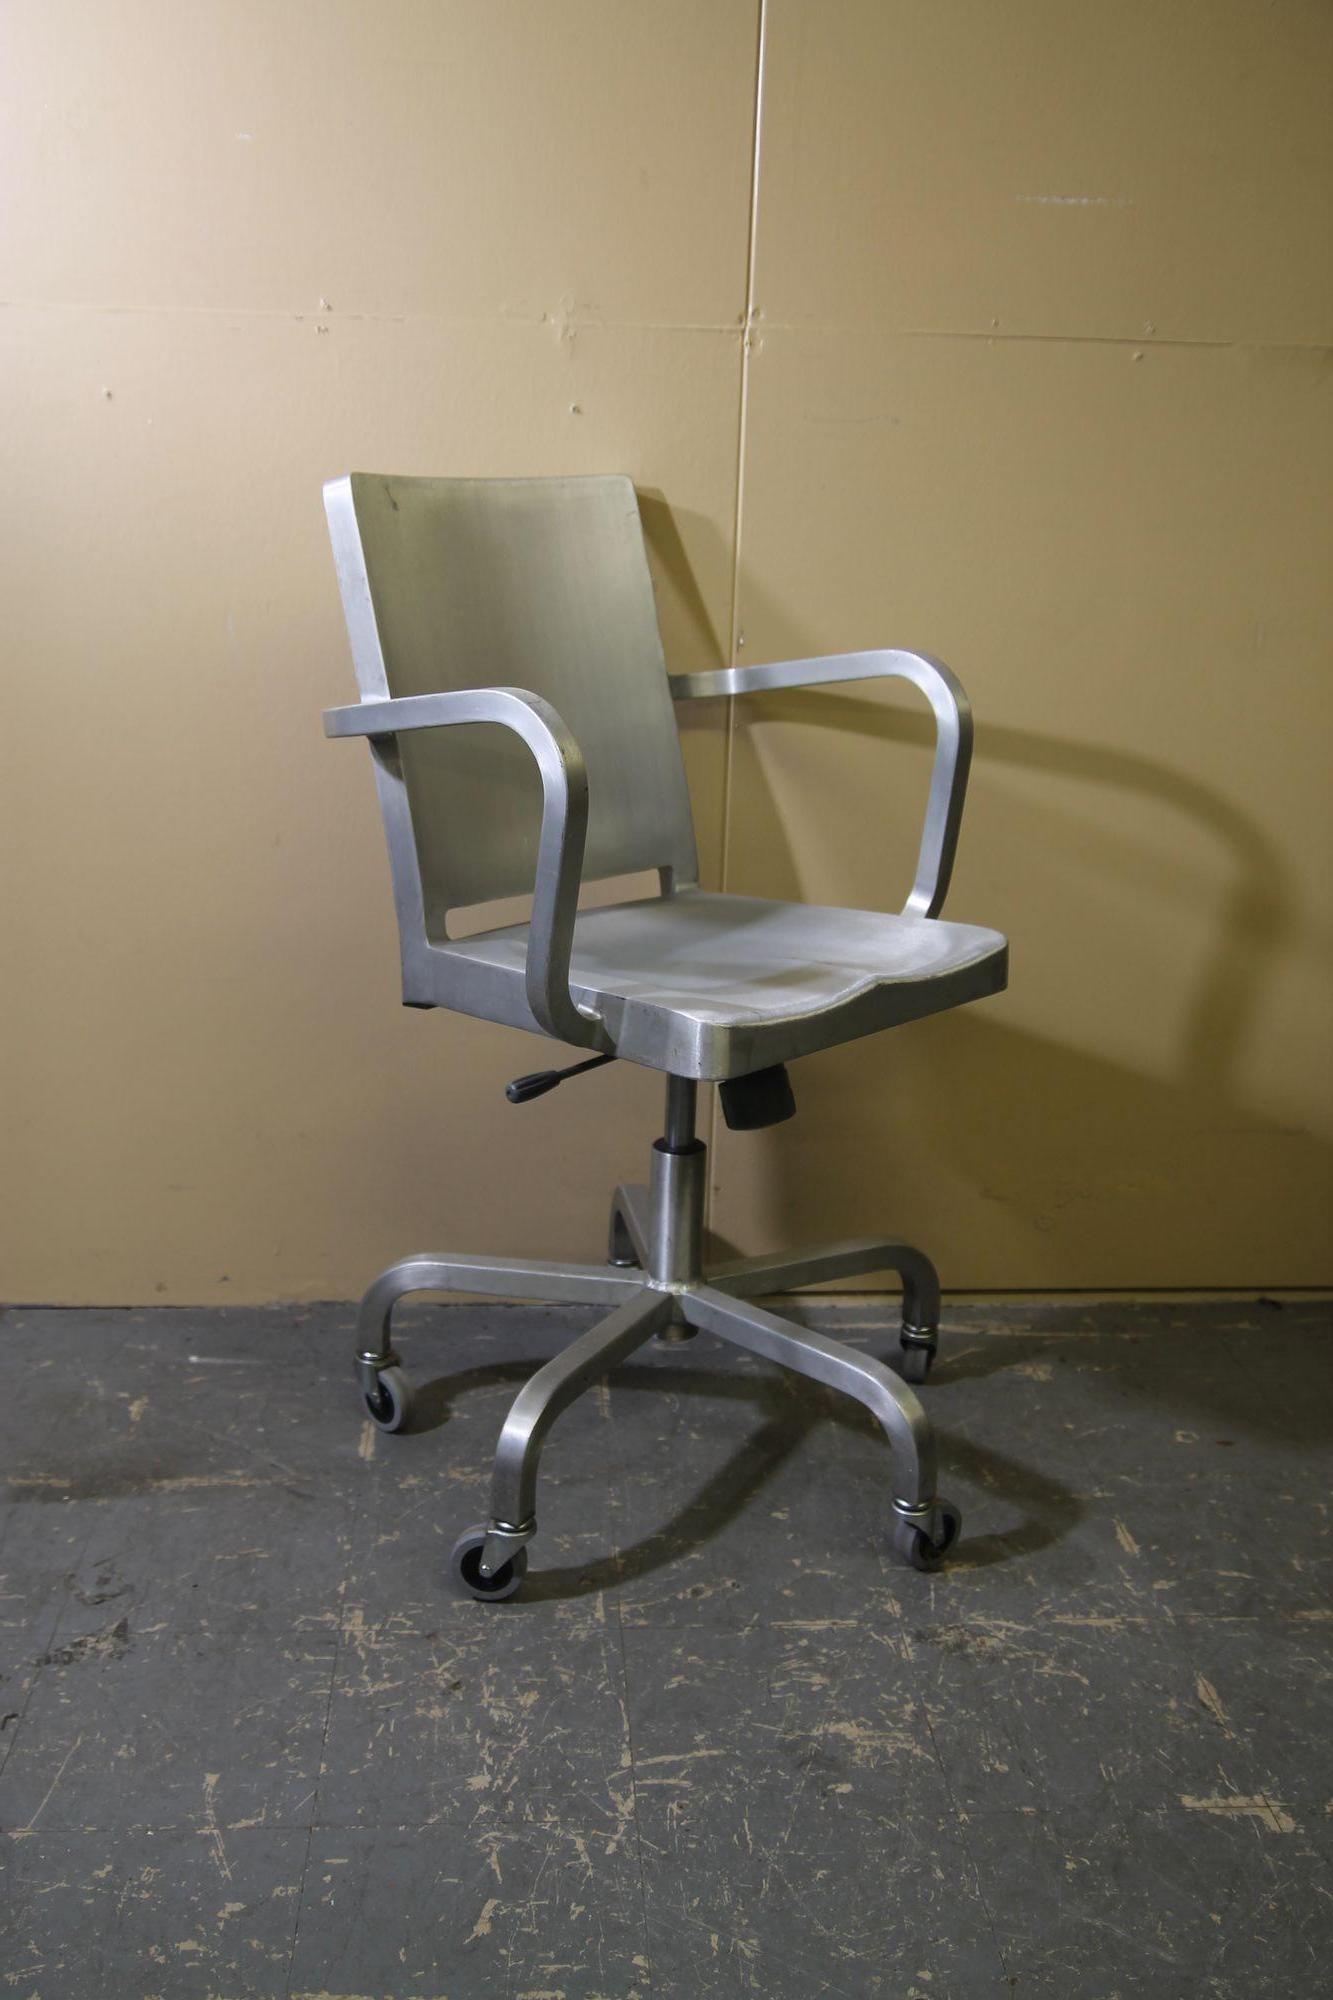 Wir freuen uns, diesen großartigen Stuhl aus gebürstetem Aluminium von Emeco anbieten zu können. Dieser von Starck entworfene Stuhl steht auf 4 Rädern. Der Stuhl ist in schönem Vintage-Zustand. Es gibt einige leichte Kratzer sowie eine Kerbe auf dem